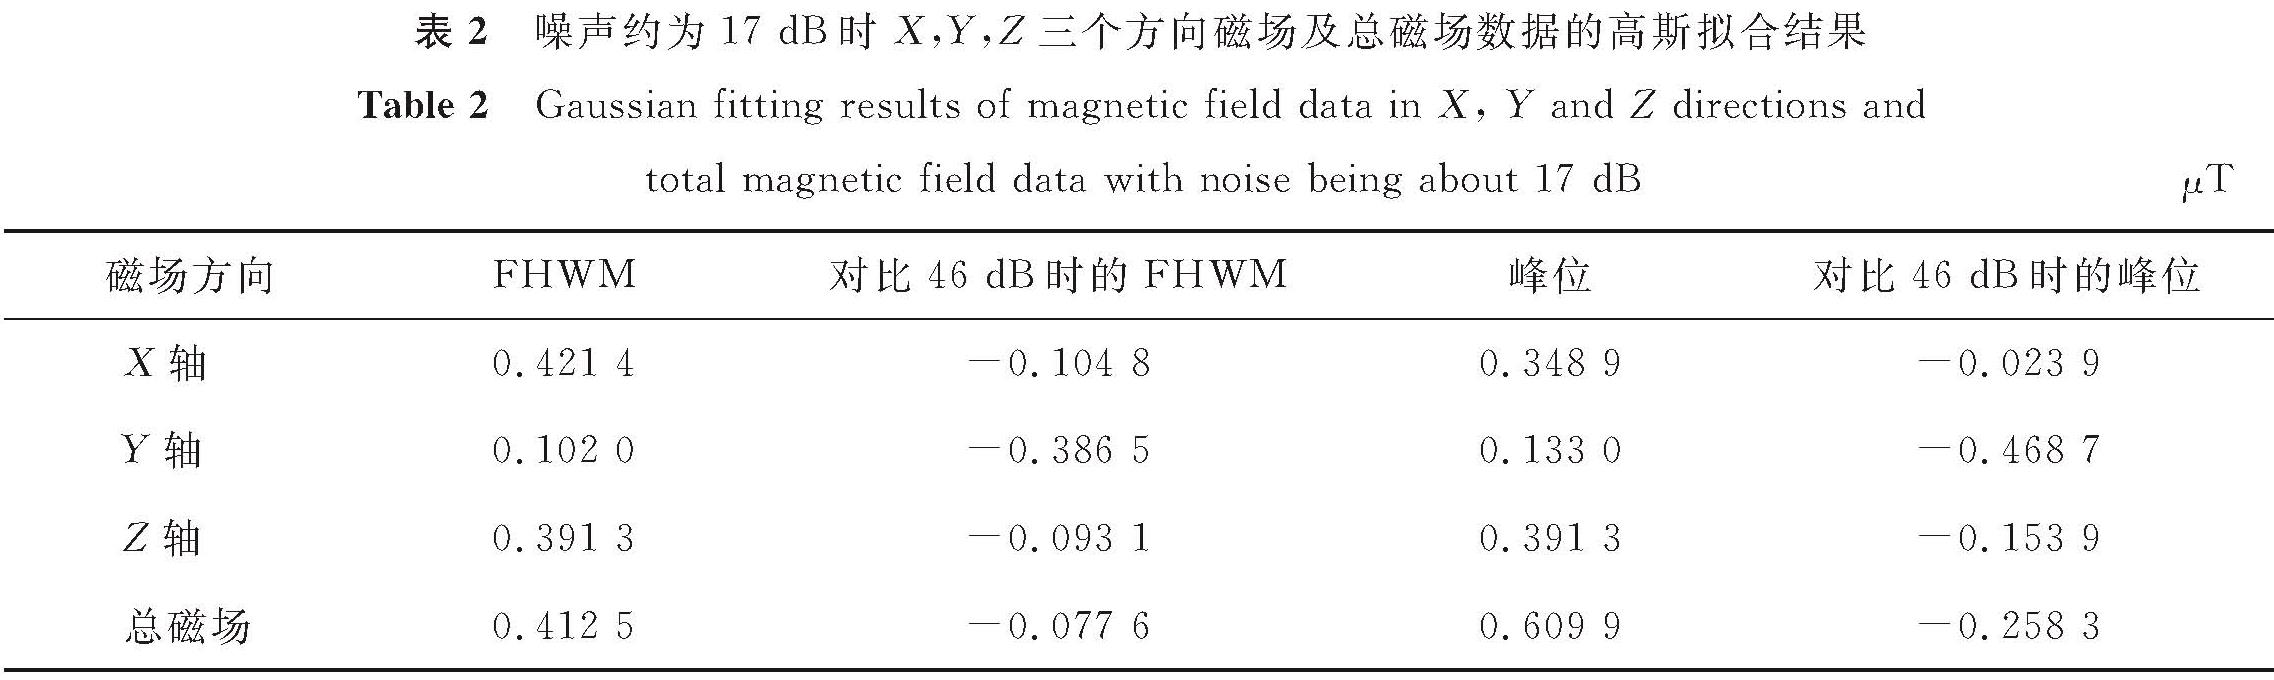 表2 噪声约为17 dB时X,Y,Z三个方向磁场及总磁场数据的高斯拟合结果<br/>Table 2 Gaussian fitting results of magnetic field data in X, Y and Z directions and total magnetic field data with noise being about 17 dBμT